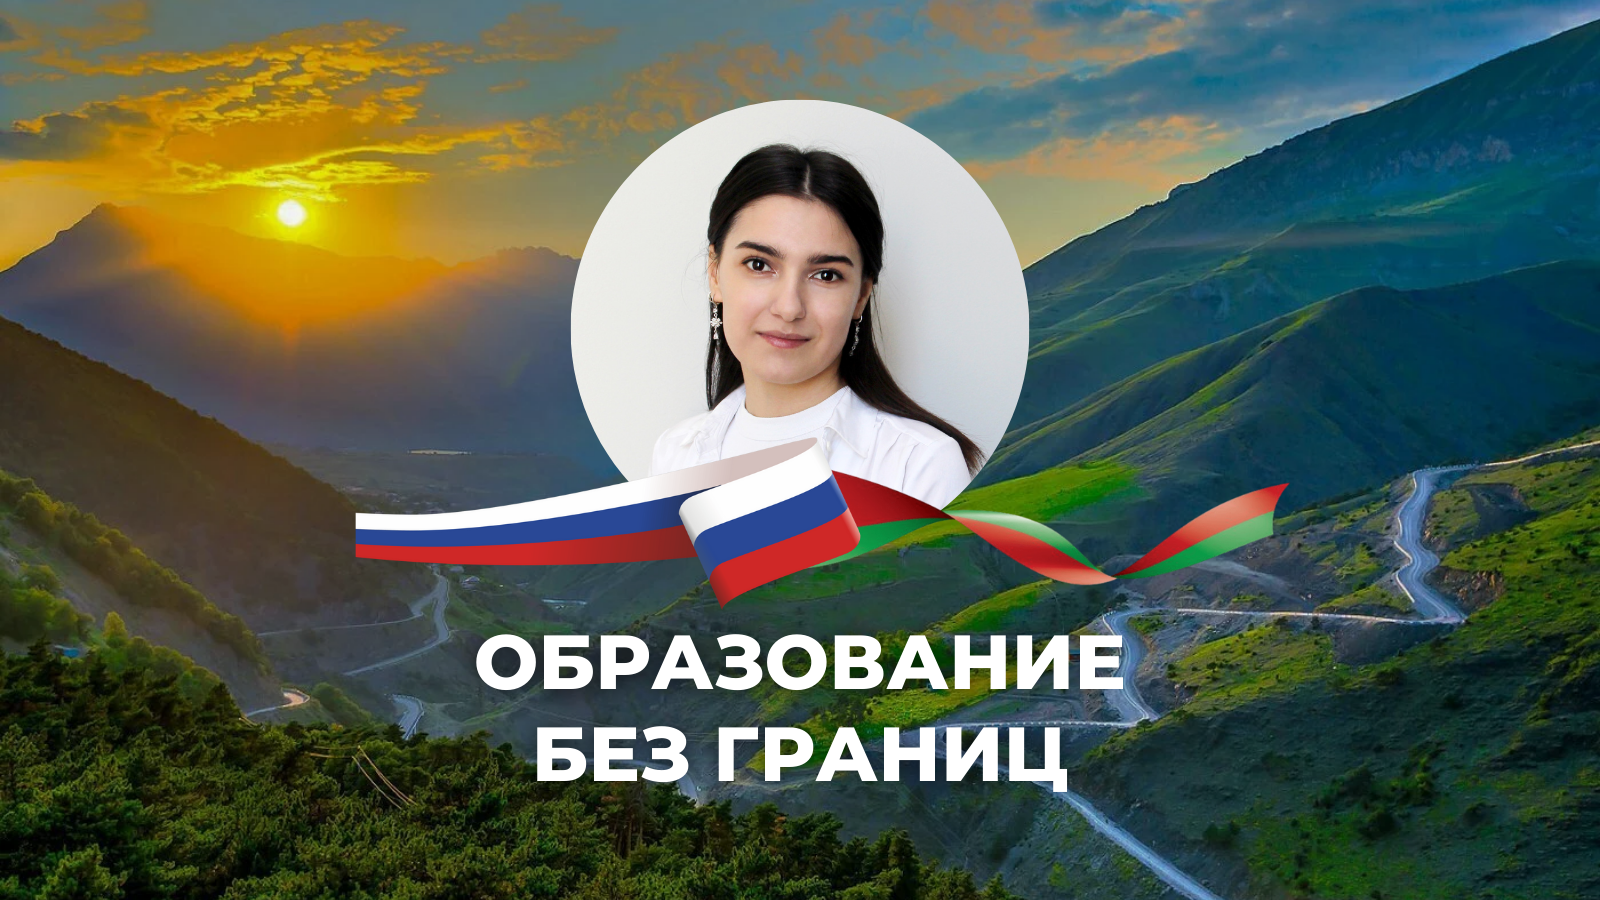 Студентка из Дагестана Амина Алиева: «Для меня самое главное в жизни – добиться своих целей»